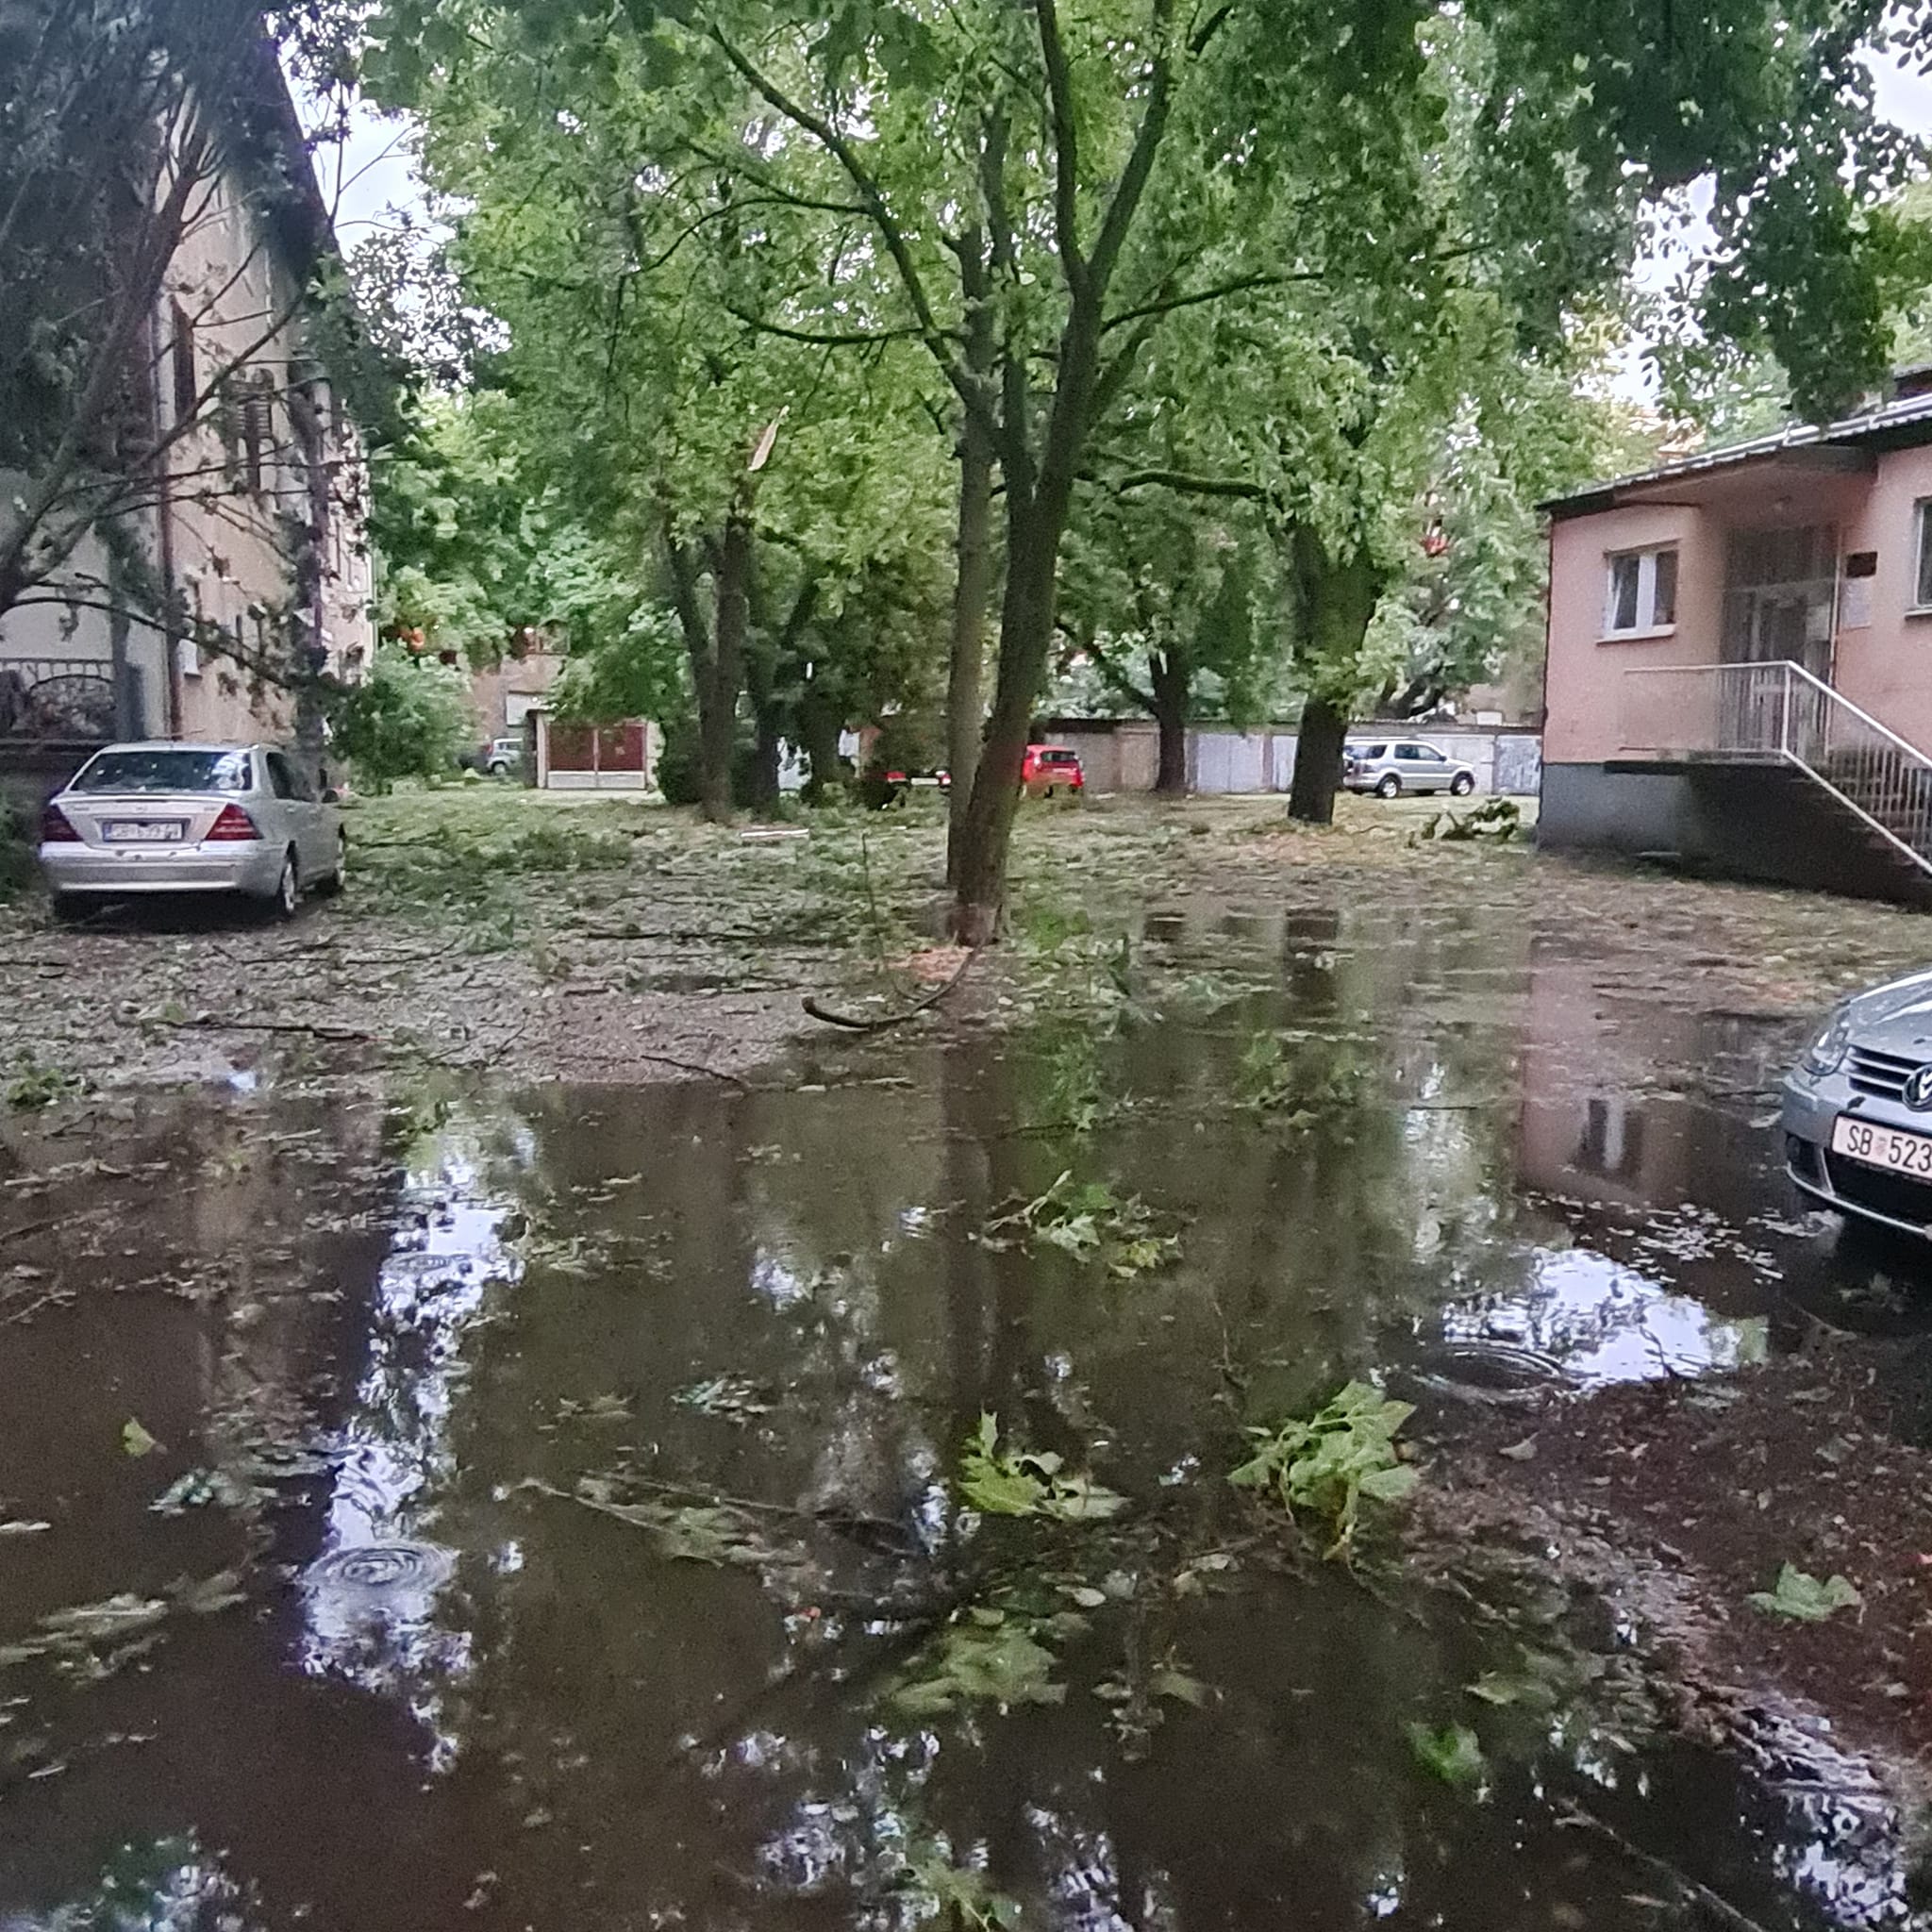 Oluja u Slavoniji ubila mladog čovjeka! Vlakovi ne voze, nema ni struje: ‘Cijelo selo je stradalo’